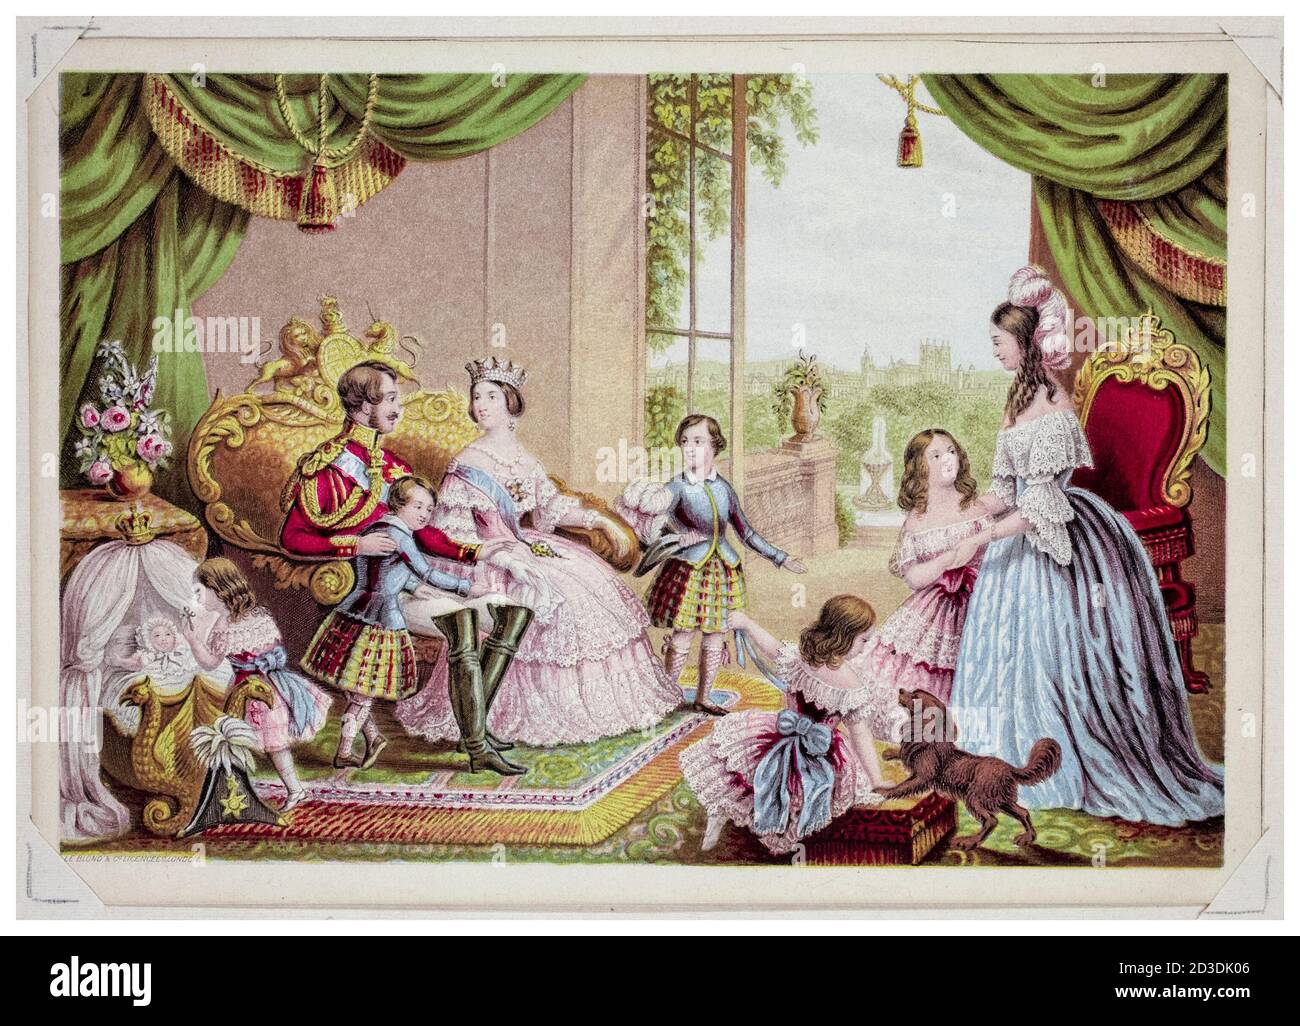 Regina Vittoria, Principe Alberto il Principe Consort e la Famiglia reale a Buckingham Palace, stampa di le Blonde & Co, circa 1845 Foto Stock